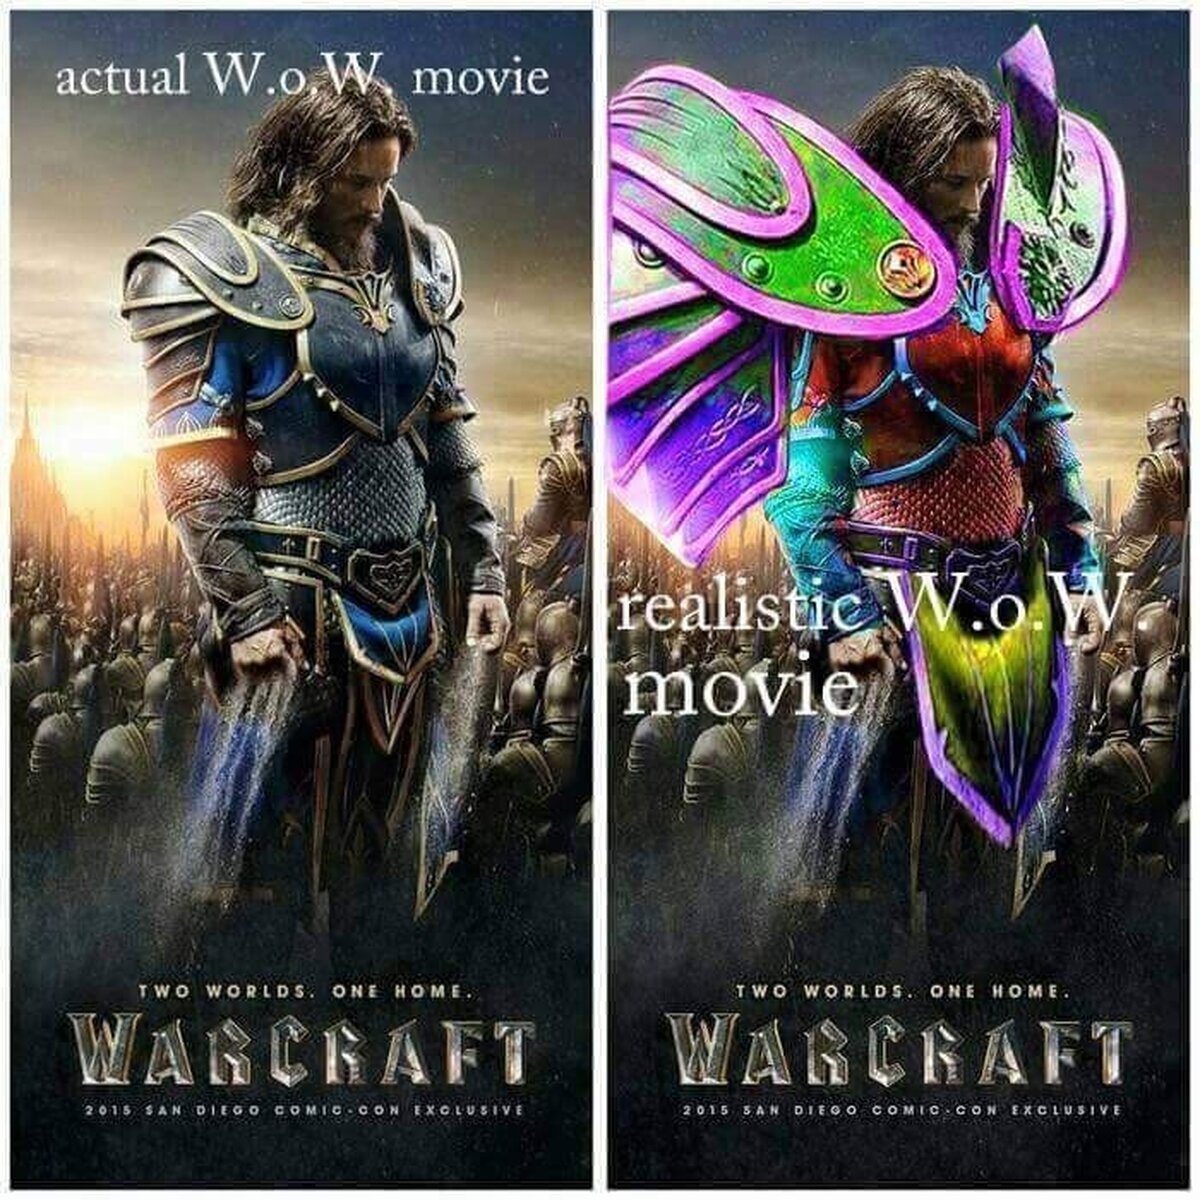 Cómo debería verse realmente la película de Warcraft